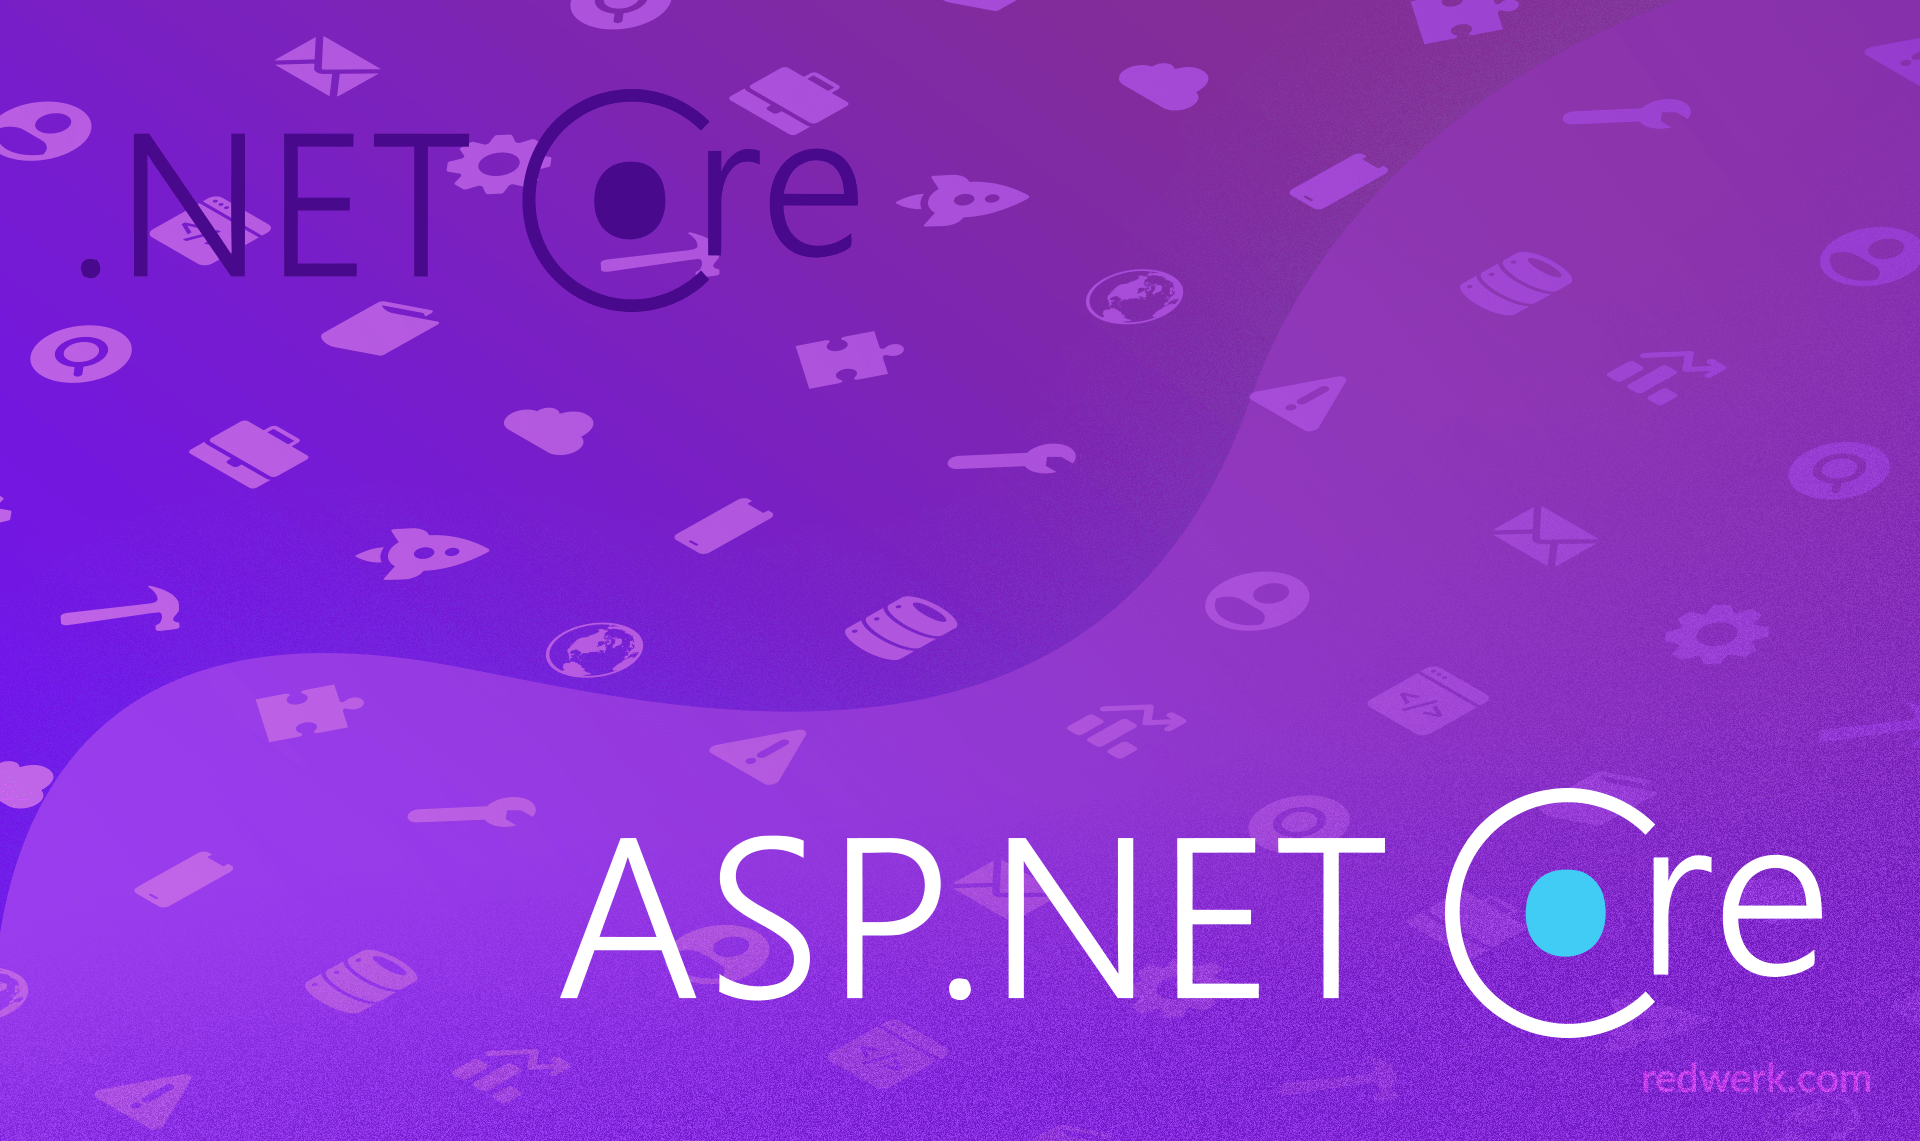 ASP.net core advantages and disadvantages